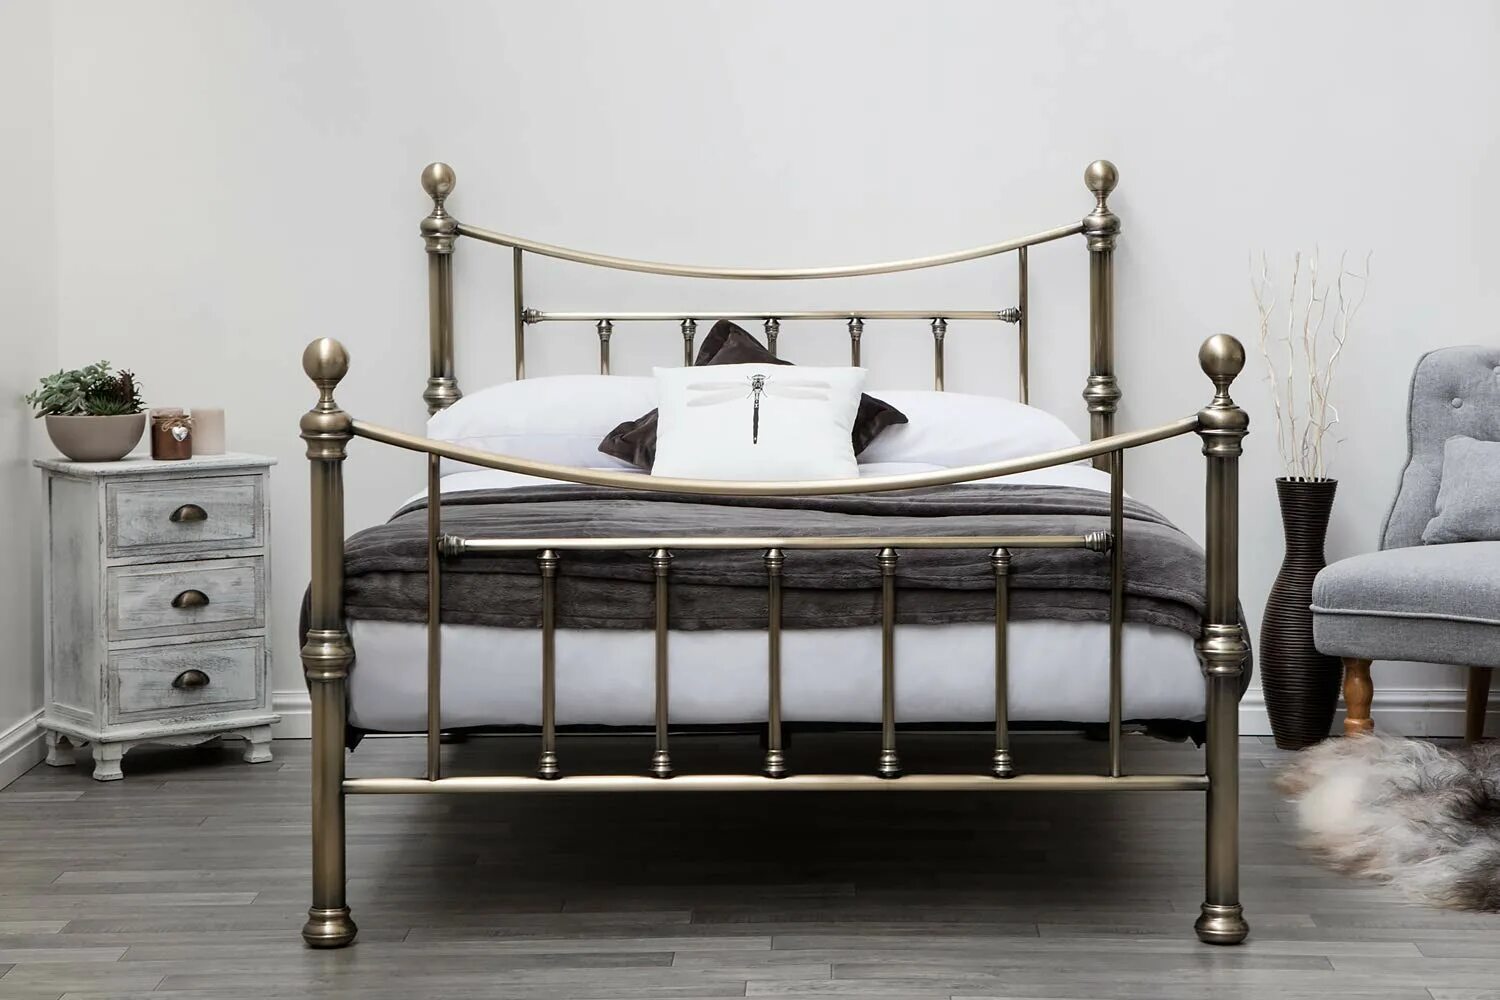 Куплю старые кровати. Кровать TETCHAIR Windsor Queen Size Antique Brass. Кровать Victoria WF 9603. Classic Victorian King Size Brass and Iron Bed 238403 Sellin кровать. Кровать металлическая Квин бэд.